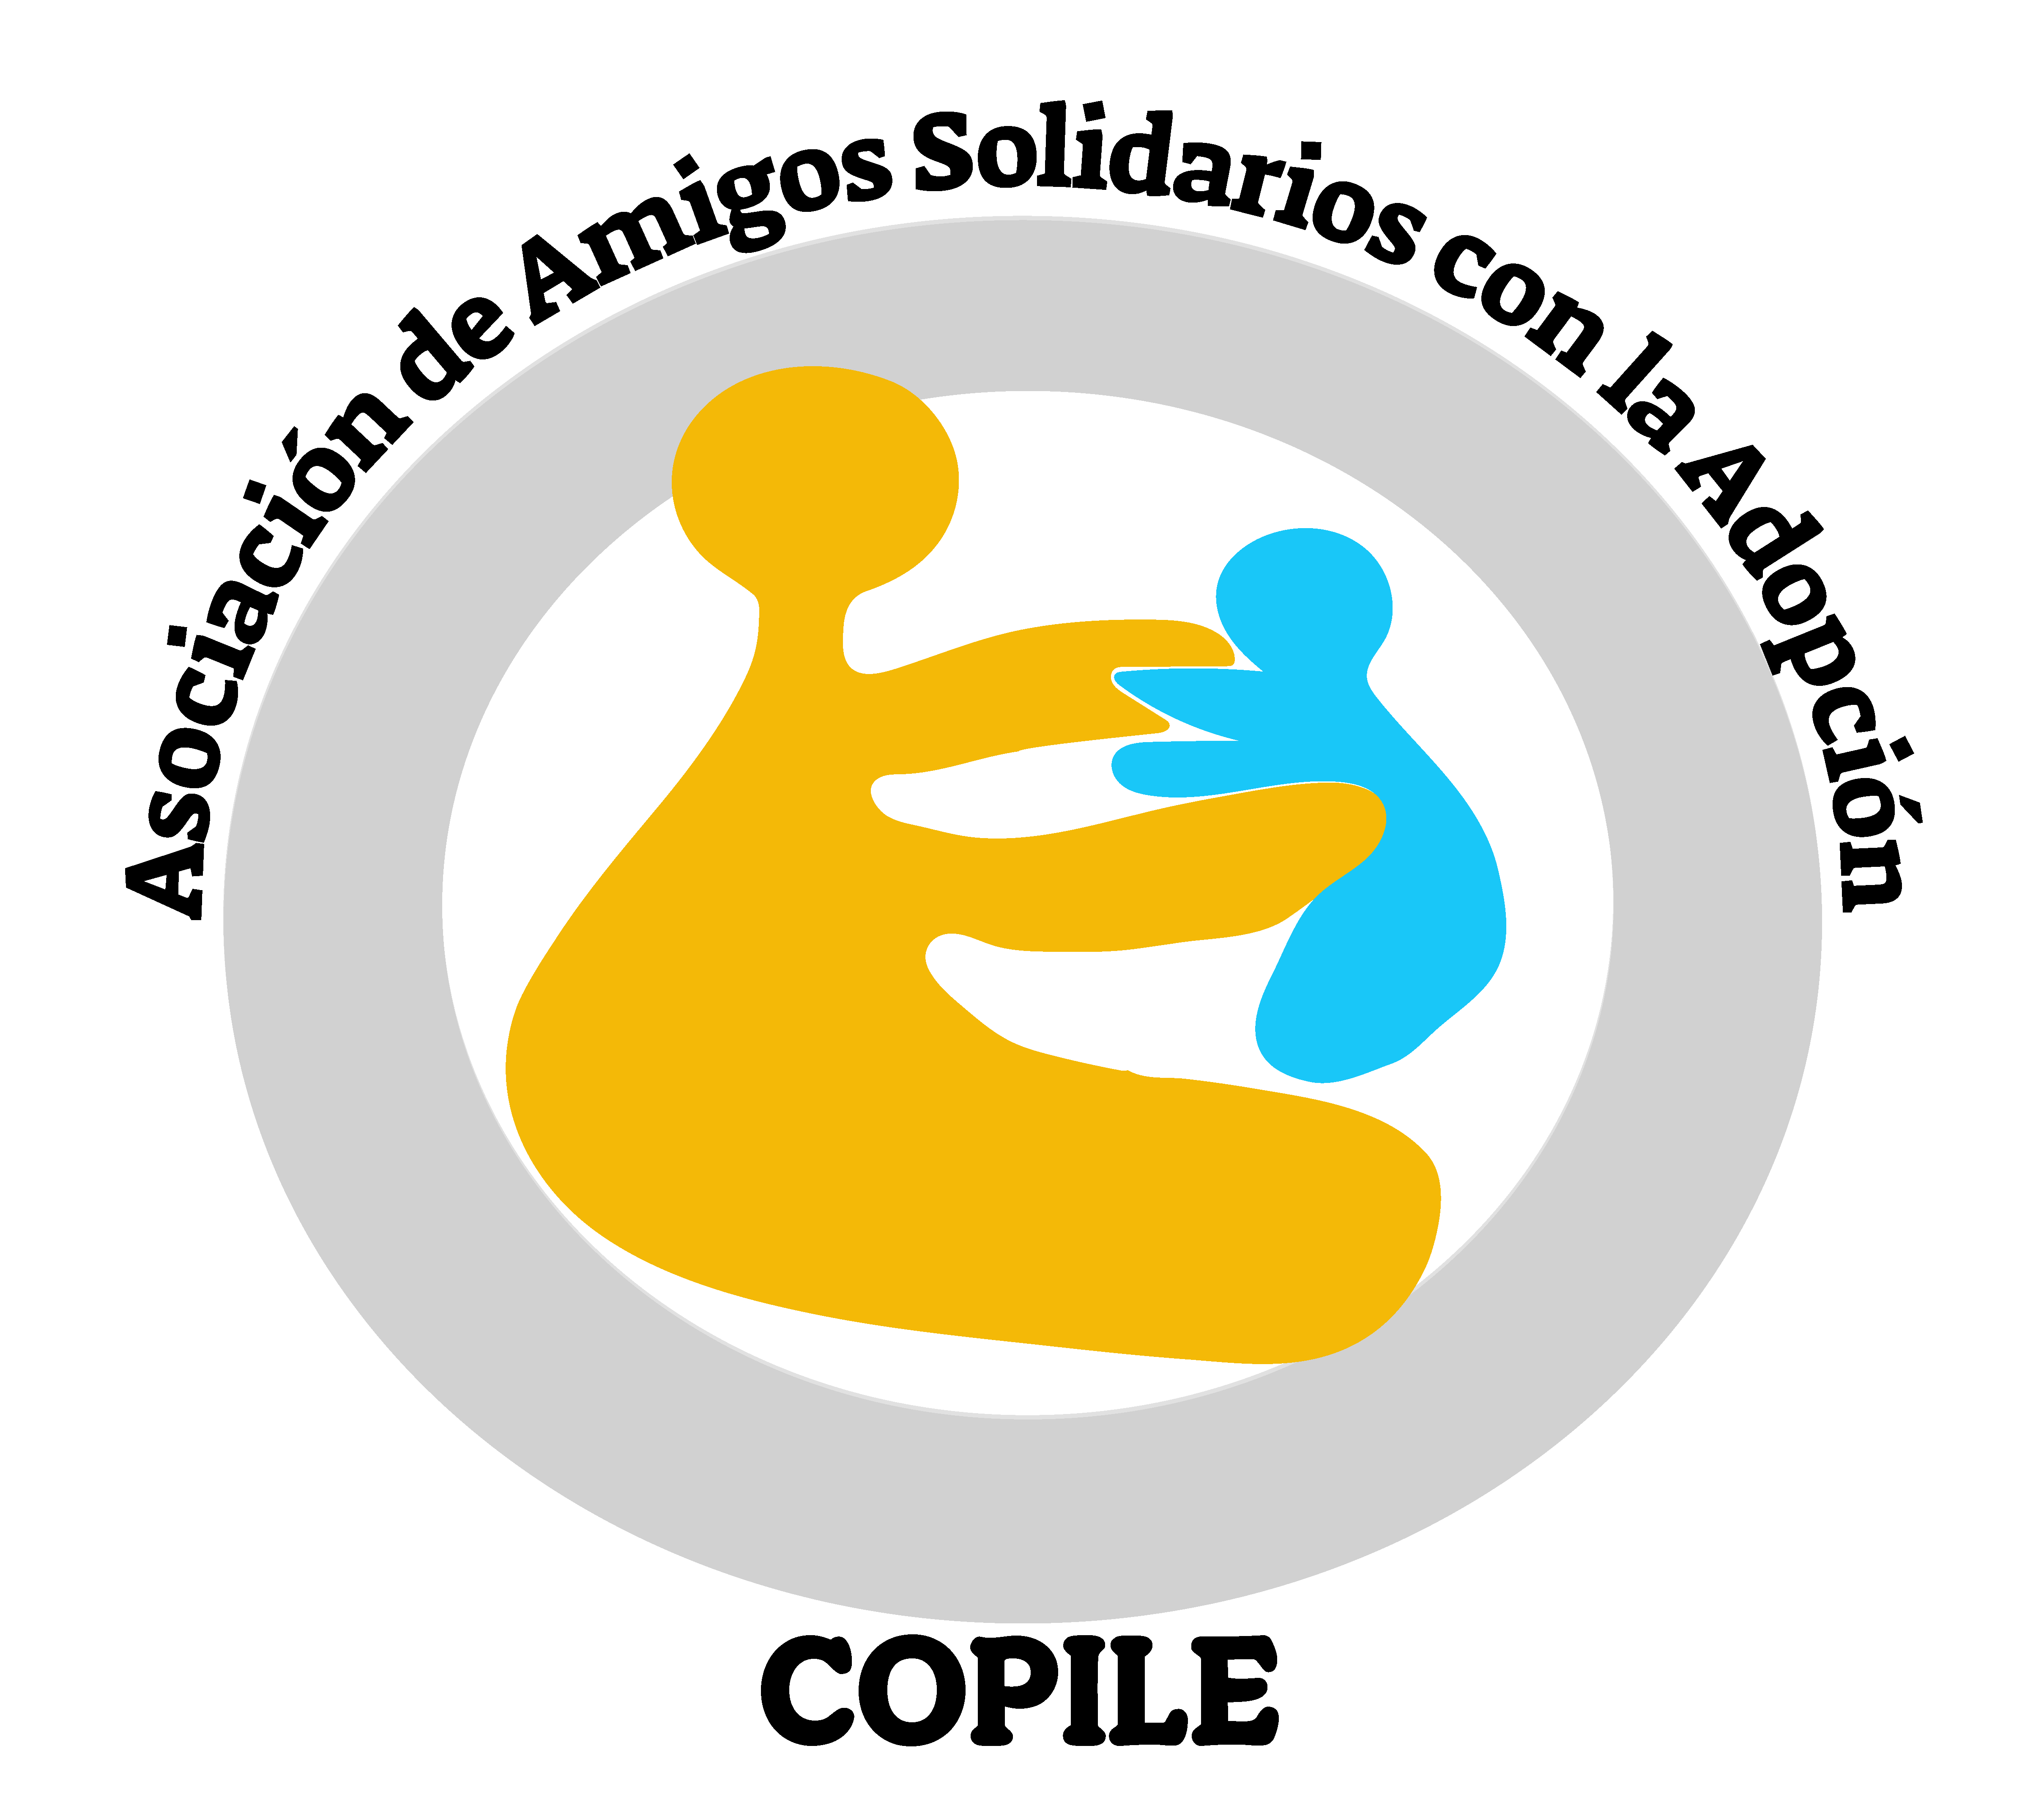 COPILE. Asociación de Amigos Solidarios con la Adopción